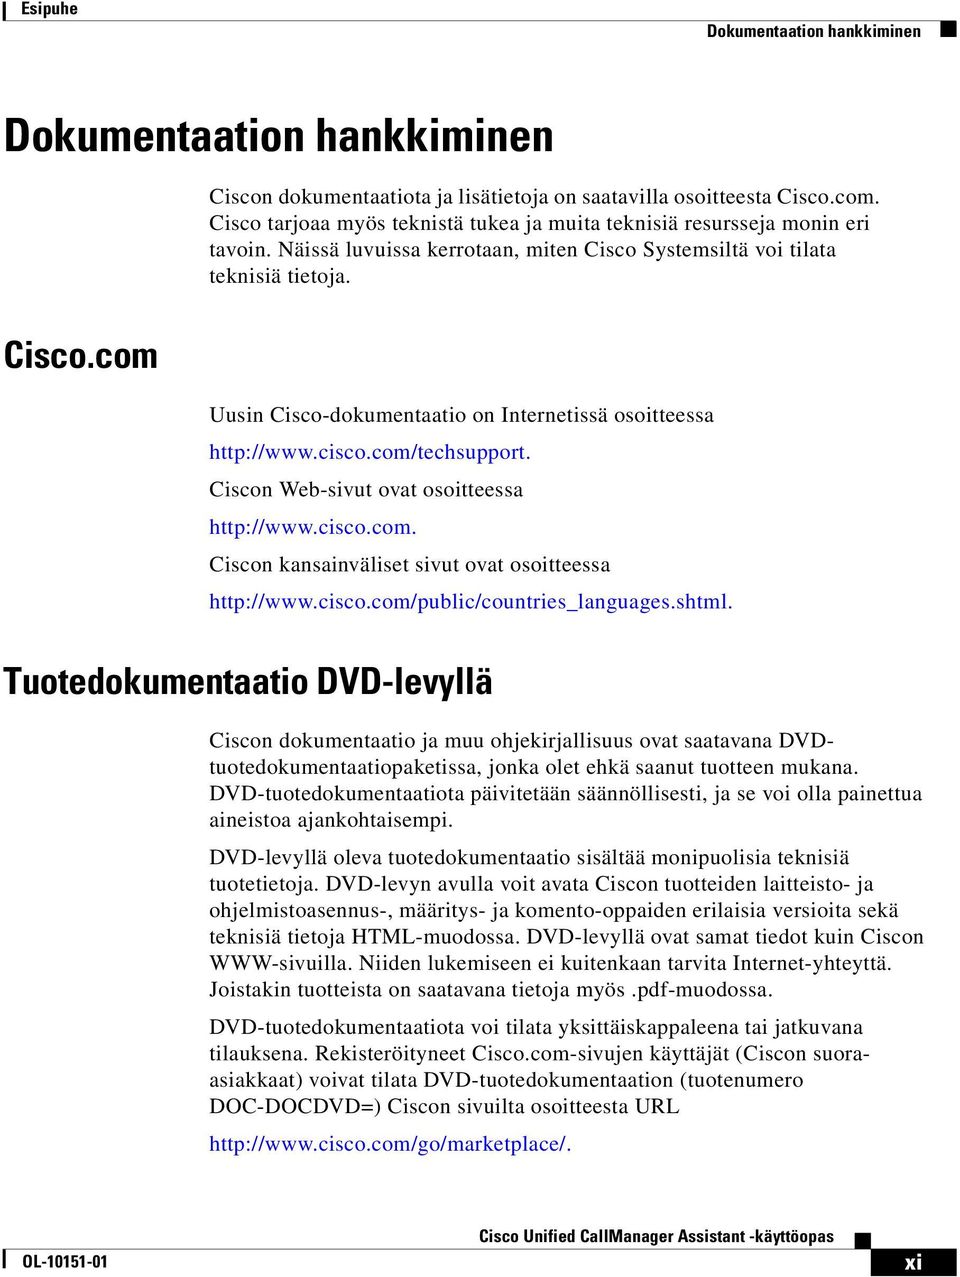 cisco.com/techsupport. Ciscon Web-sivut ovat osoitteessa http://www.cisco.com. Ciscon kansainväliset sivut ovat osoitteessa http://www.cisco.com/public/countries_languages.shtml.